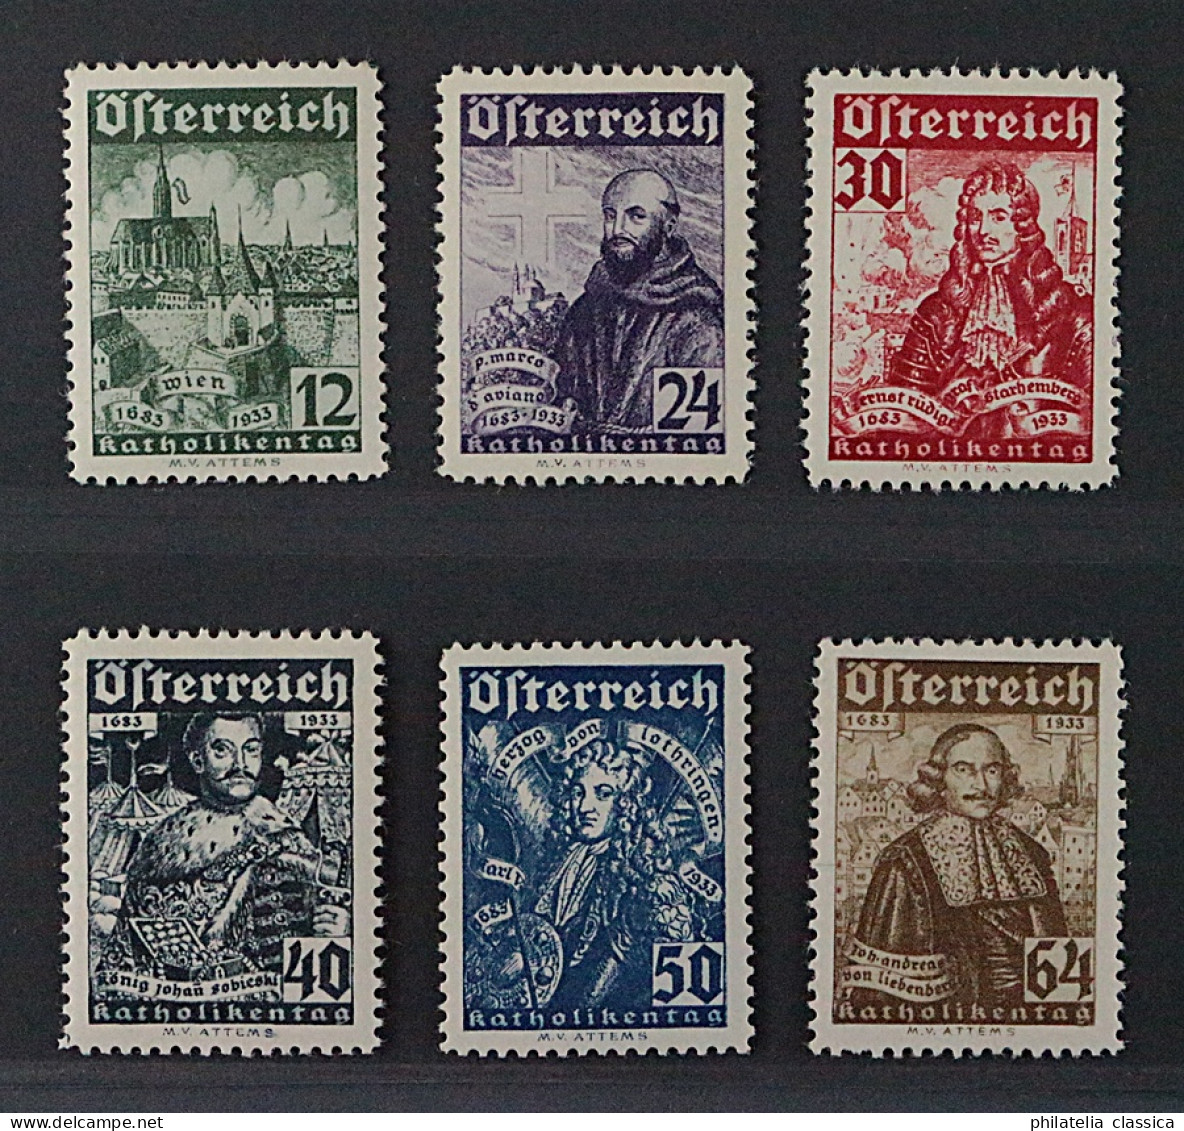 Österreich  557-62 **  Katholikentag 1933, Komplett, Postfrisch, KW 440,- € - Ongebruikt